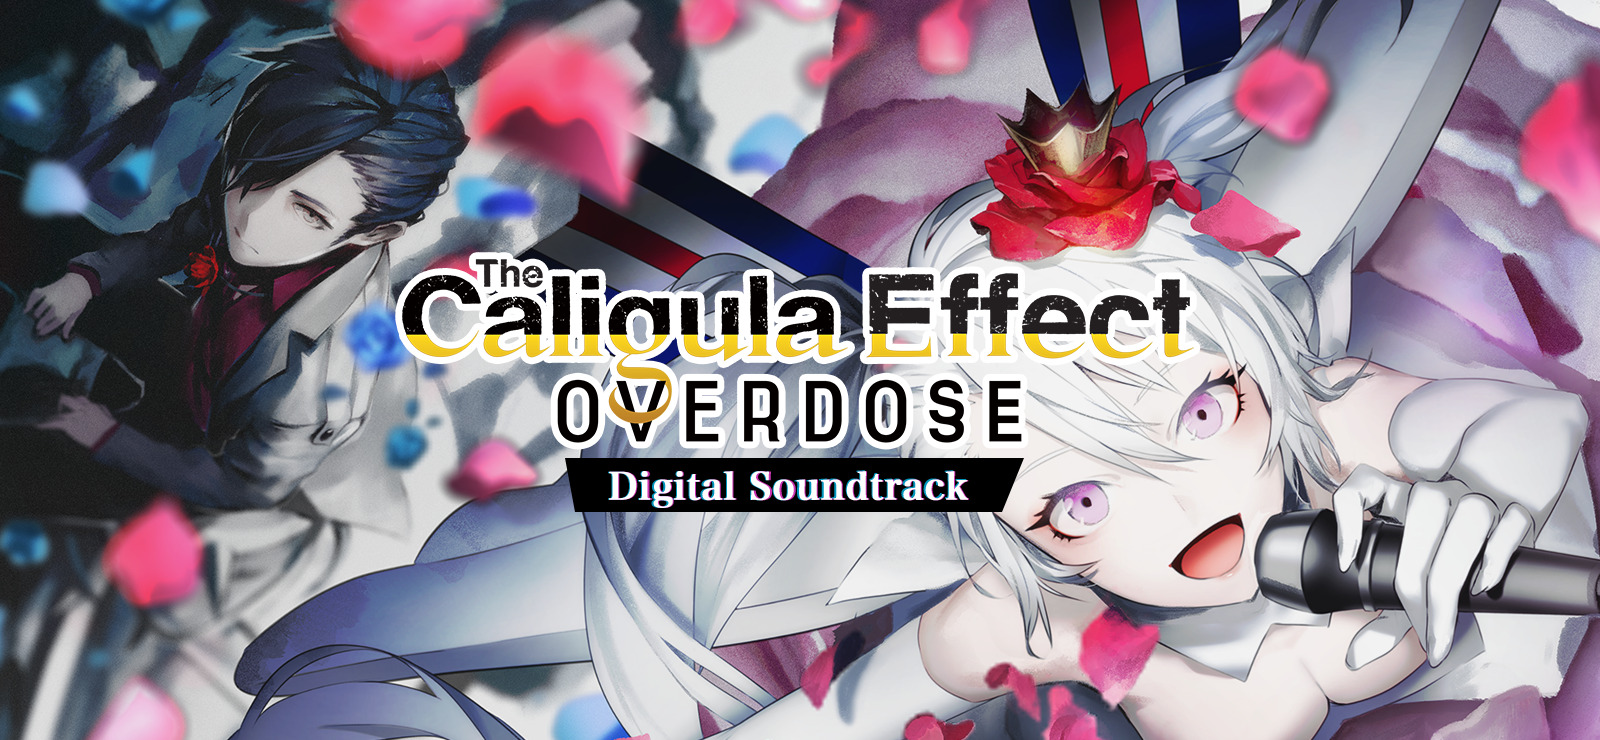 The Caligula Effect: Overdose - Digital Soundtrack DLC Steam CD Key 4.36 usd